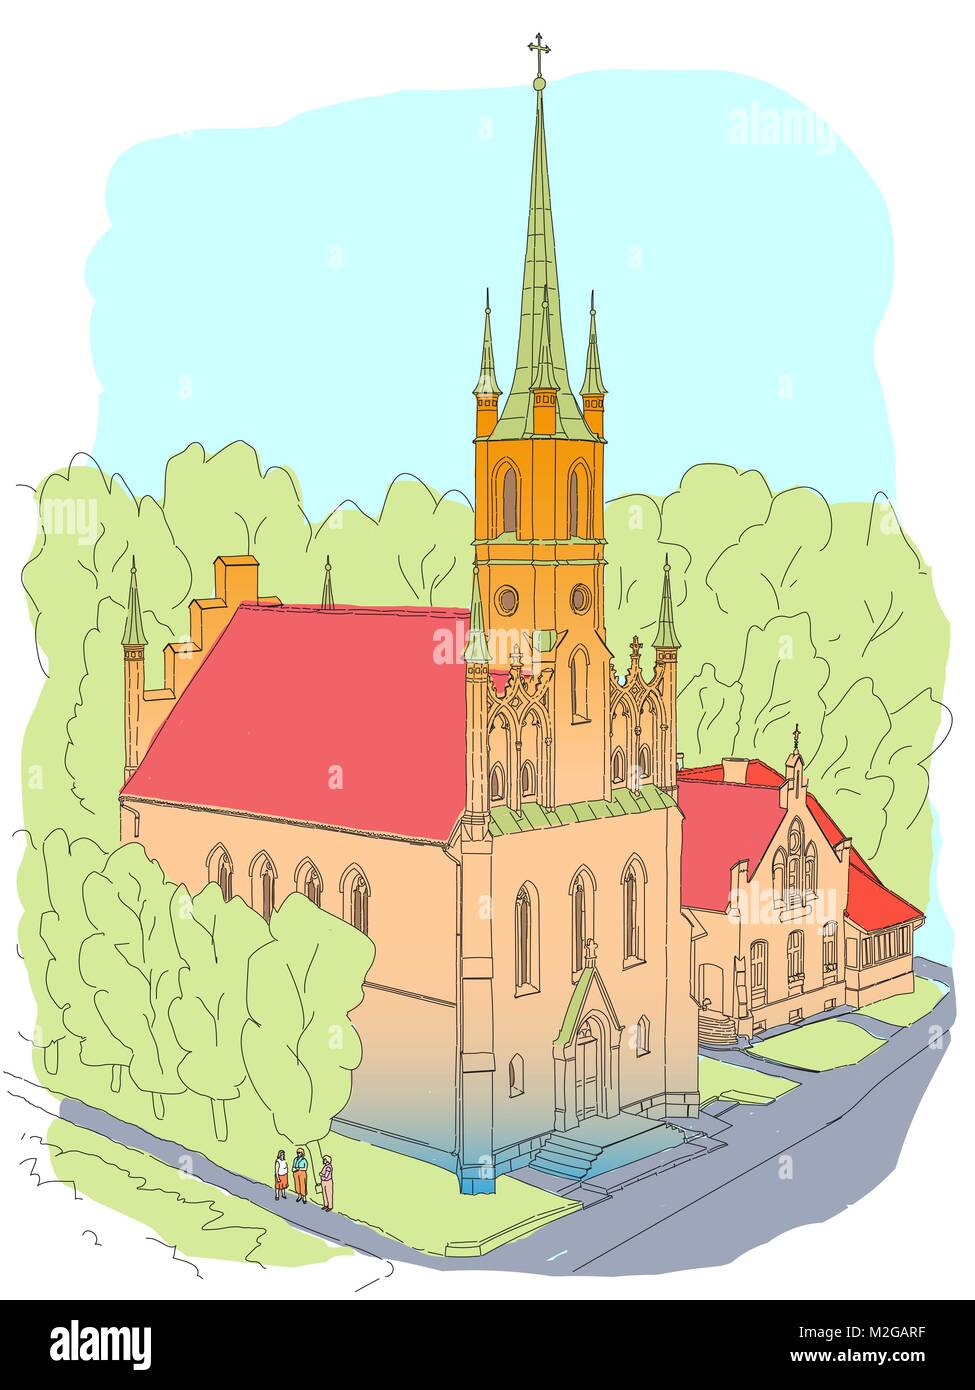 Farbe Skizze von der Kathedrale im gotischen Stil. In der kleinen gemütlichen Stadt in Europa. Stock Vektor